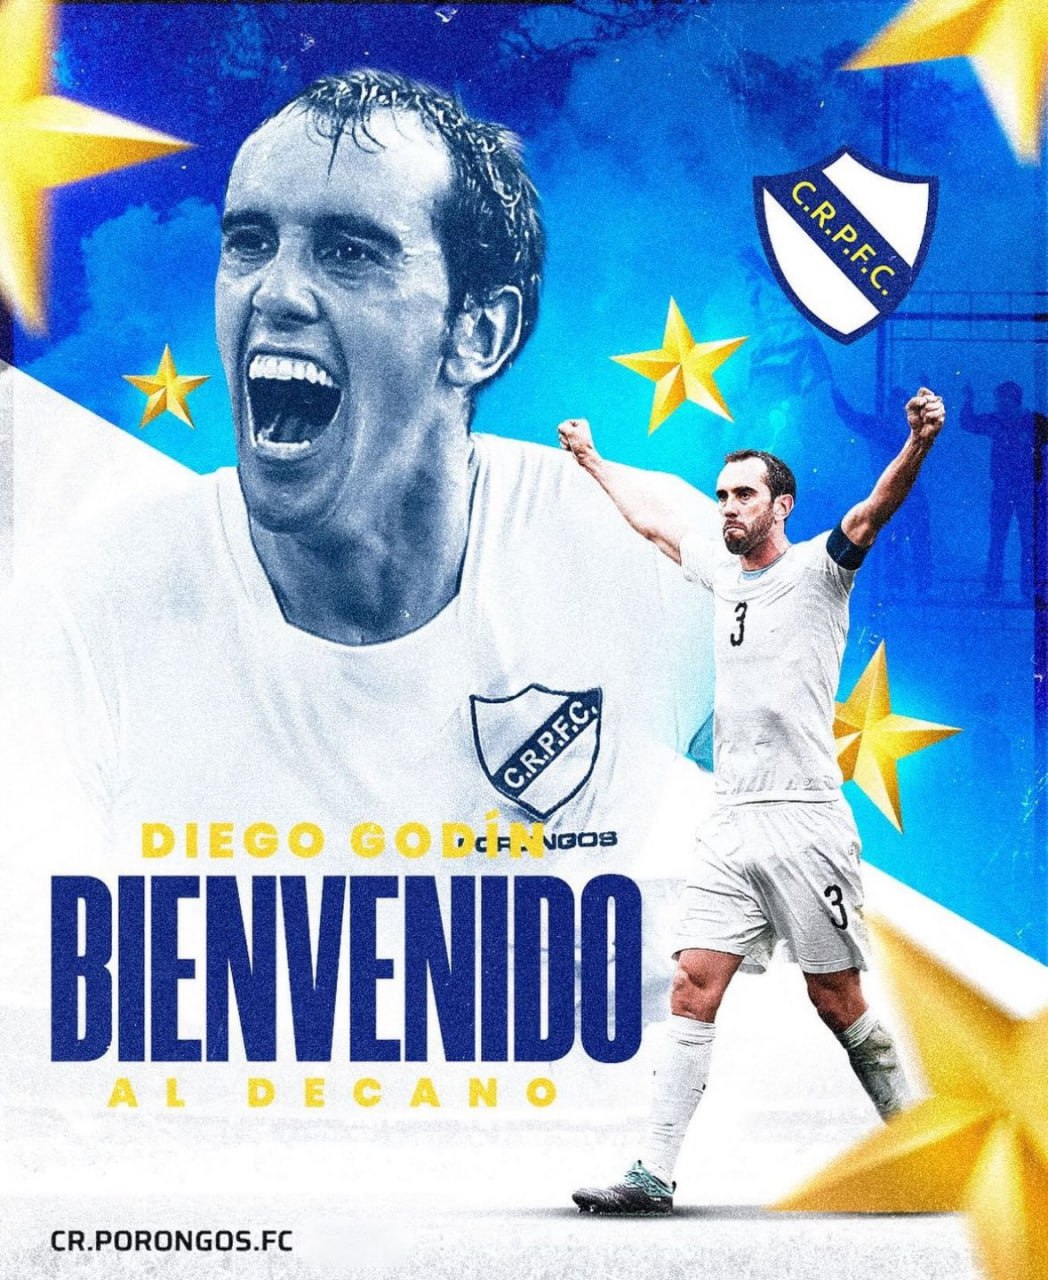 دیه‌گو گودین به پرونگوس پیوست / رسمی: بازگشت اسطوره بازنشسته اروگوئه به فوتبال 2